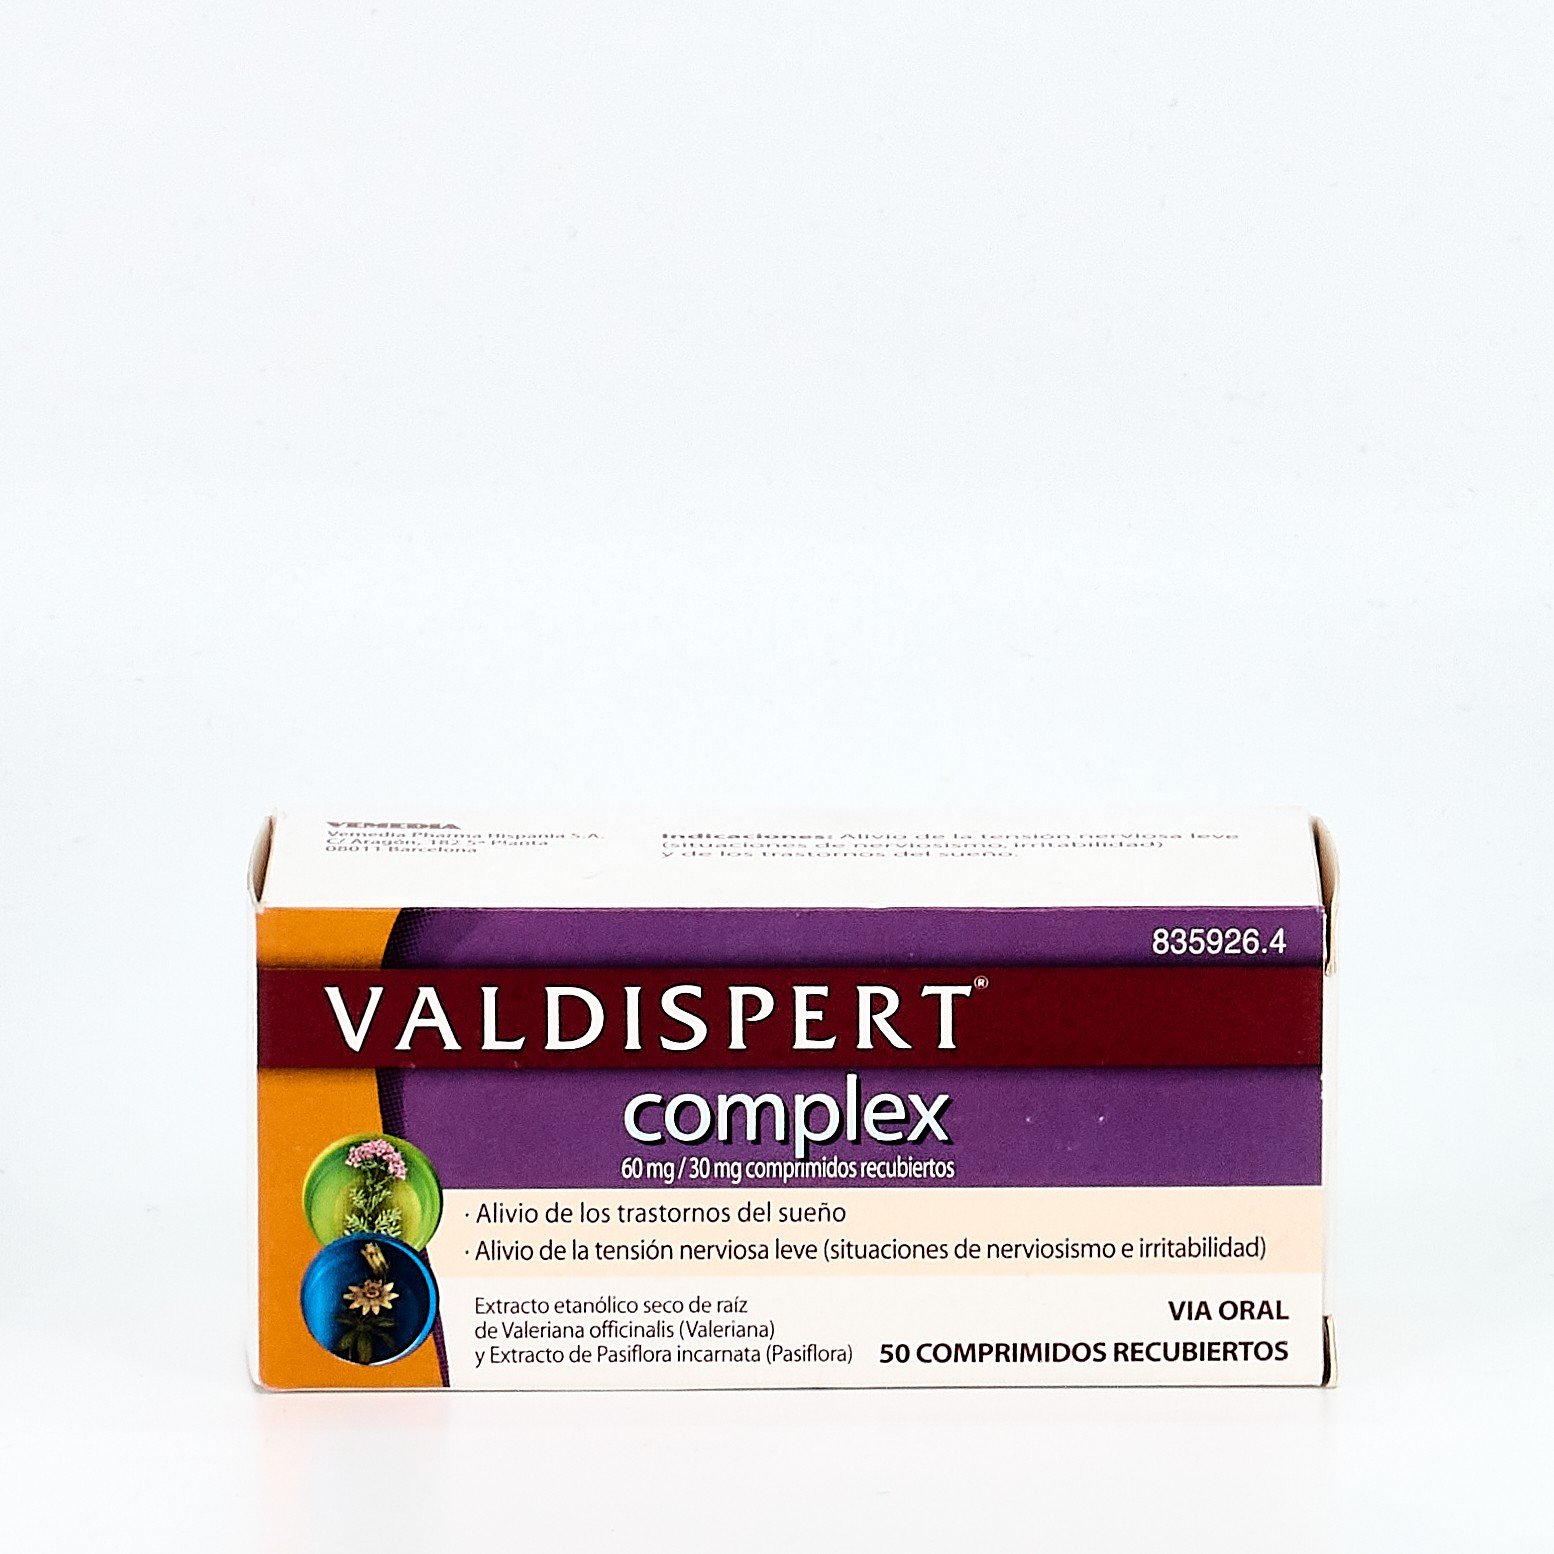 Valdispert complex 50 comprimidos recubiertos